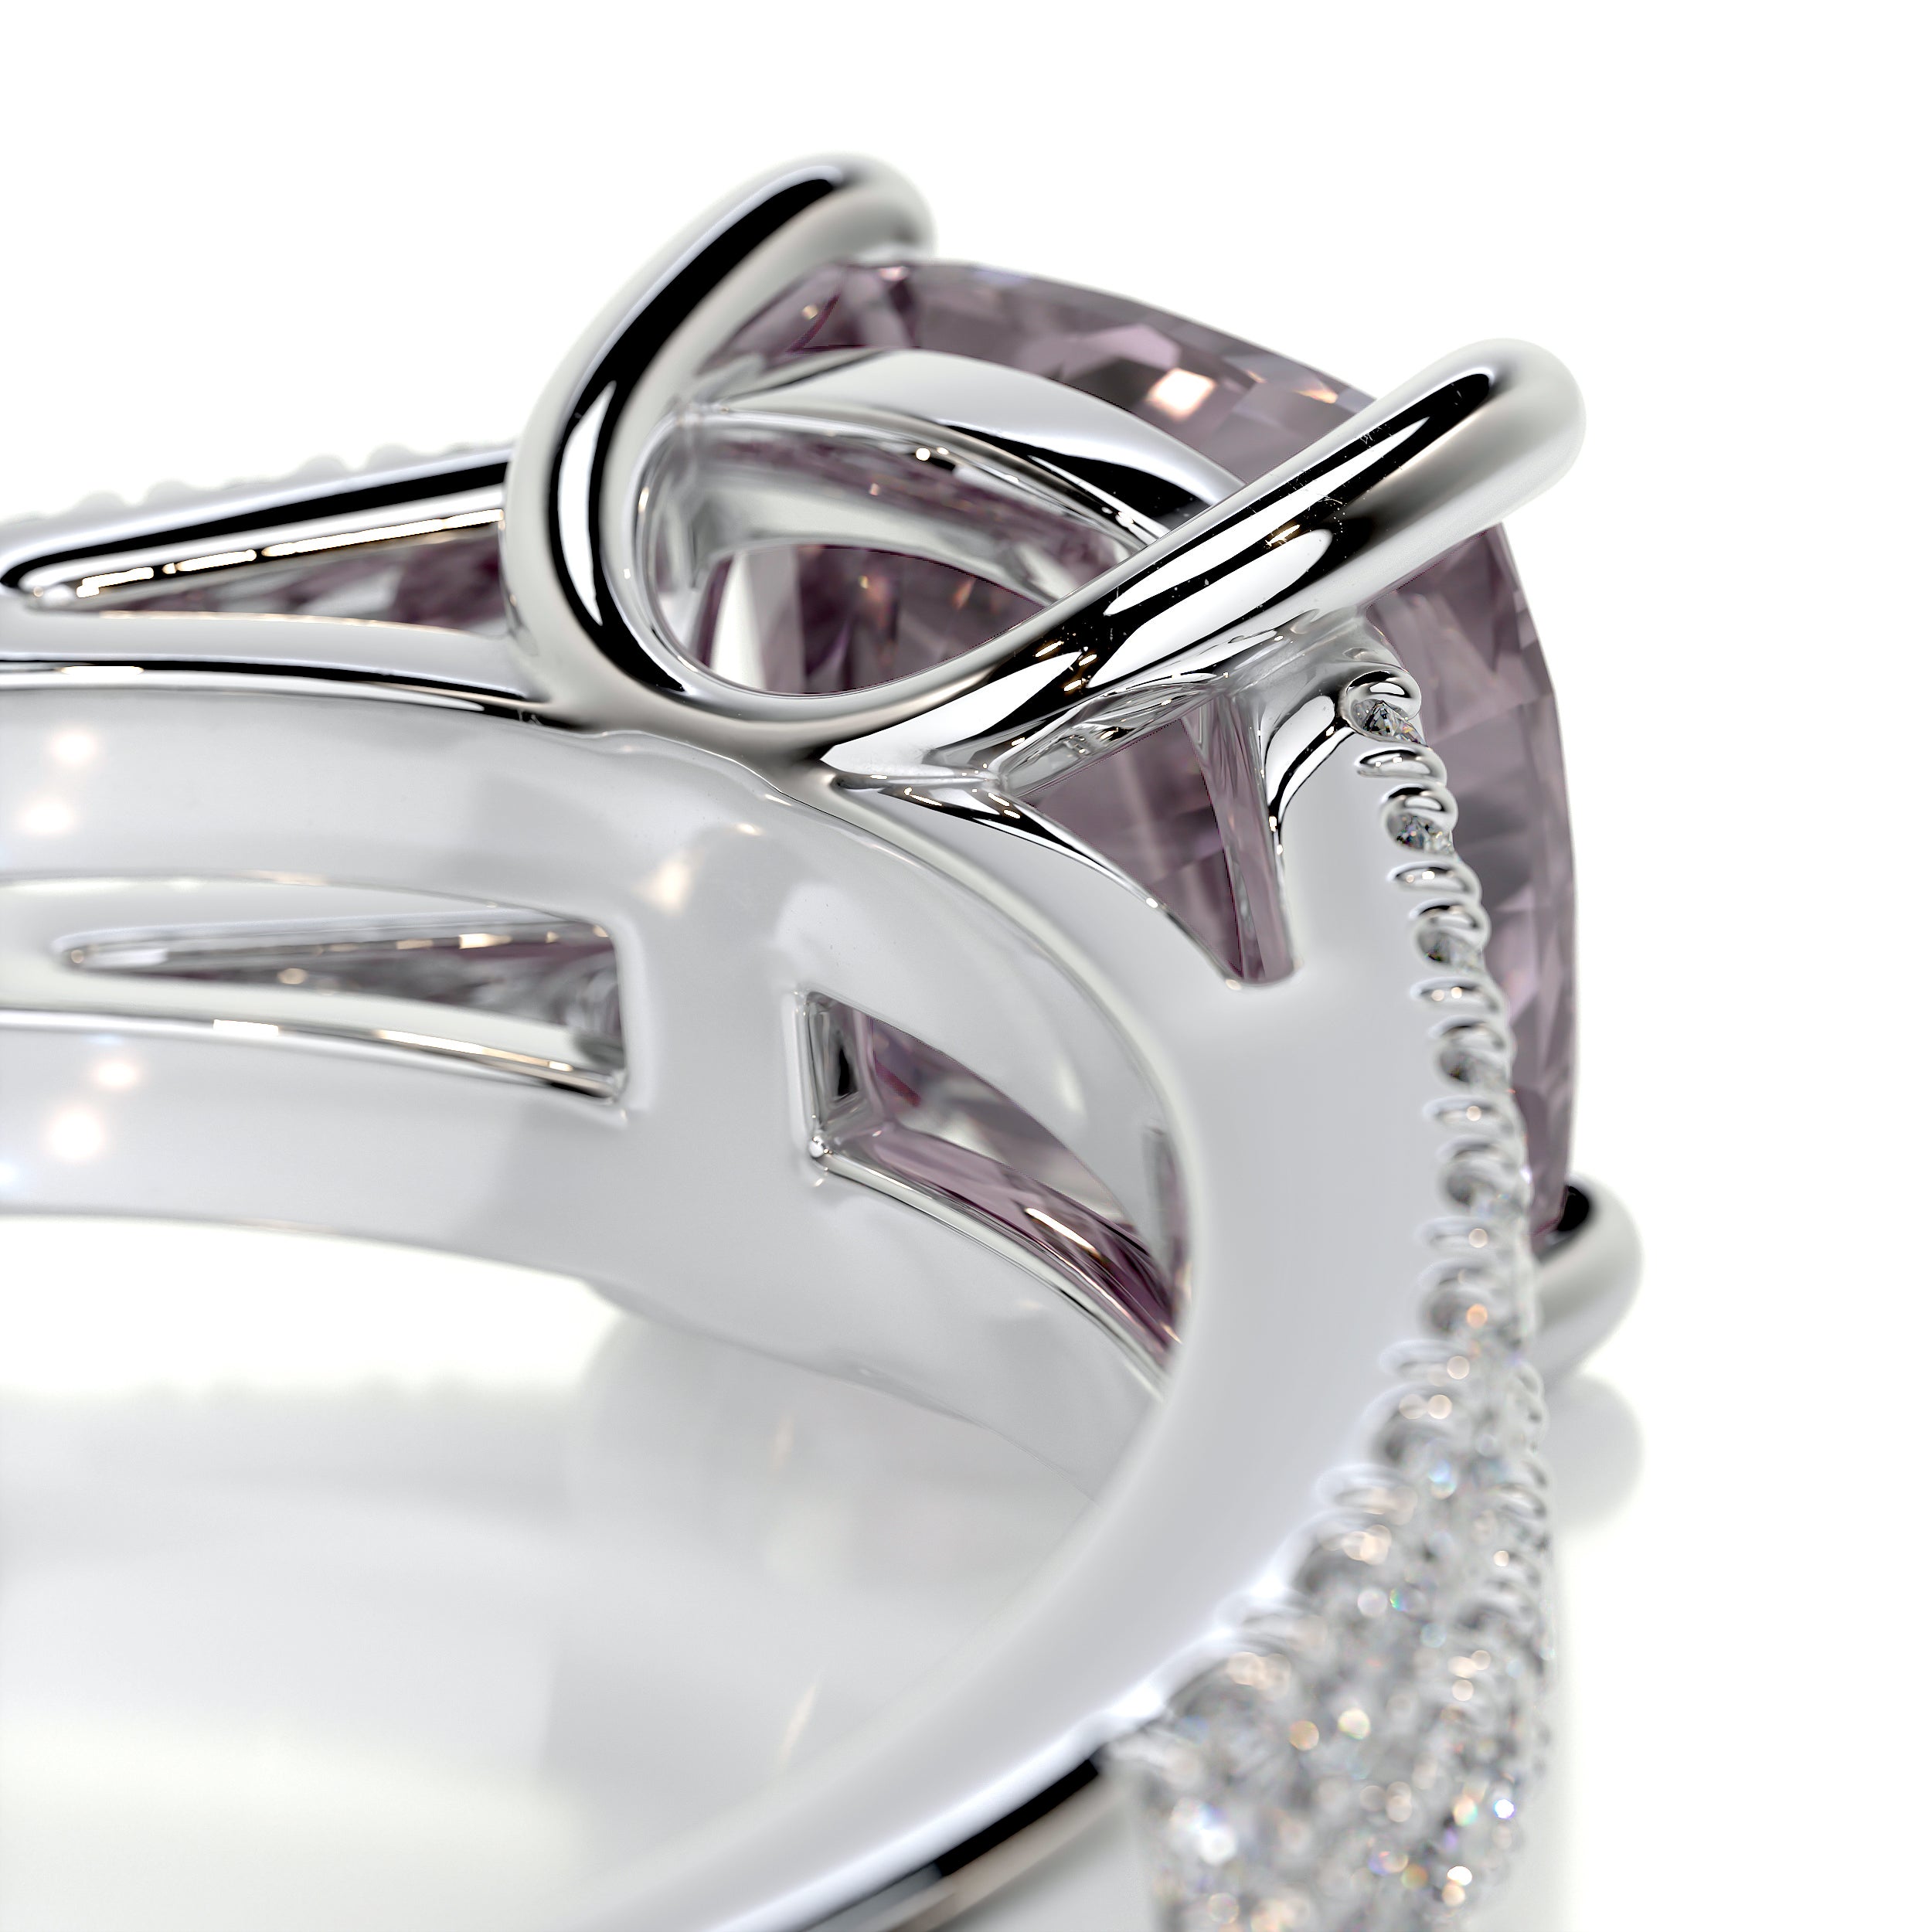 Sadie Gemstone & Diamonds Ring   (2.05 Carat) -18K White Gold